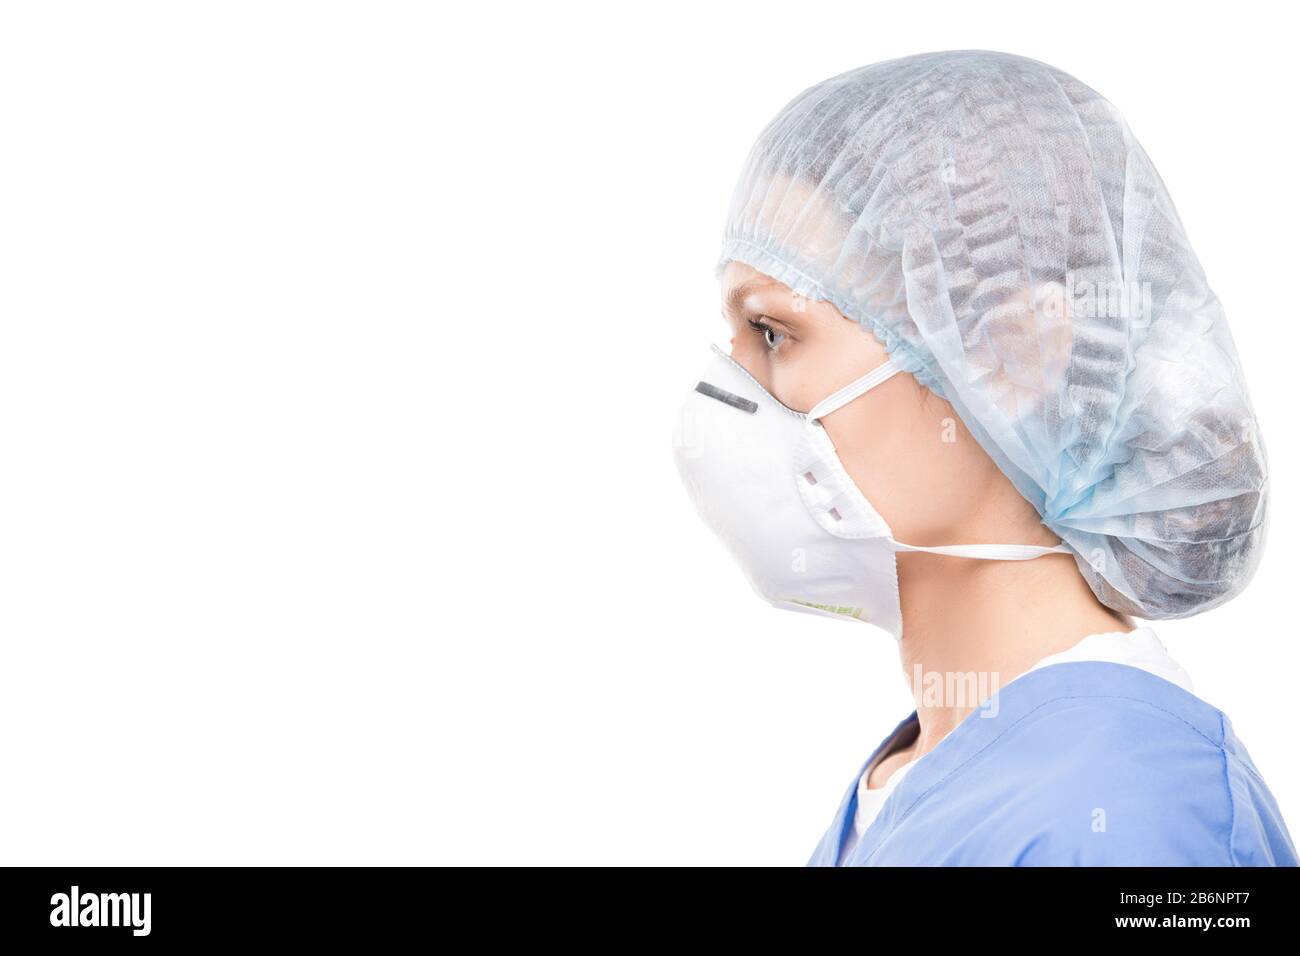 Vue latérale d'un spécialiste médical féminin dans le masque de protection et la casquette chirurgicale sur fond blanc Banque D'Images